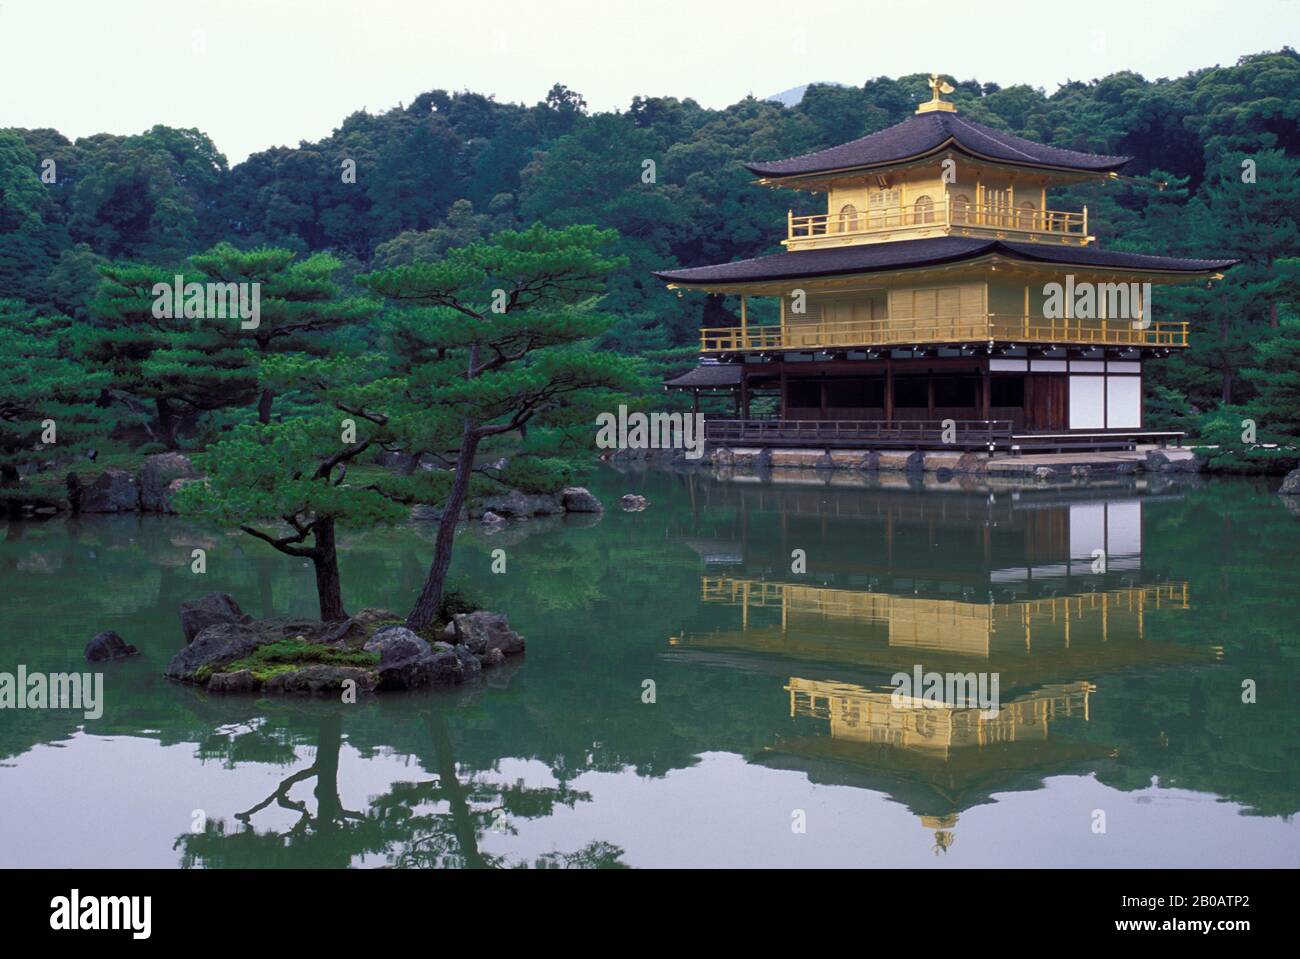 JAPAN, KYOTO, KINKAKUJI TEMPLE, GOLDEN PAVILION, REFLECTING IN POND Stock Photo